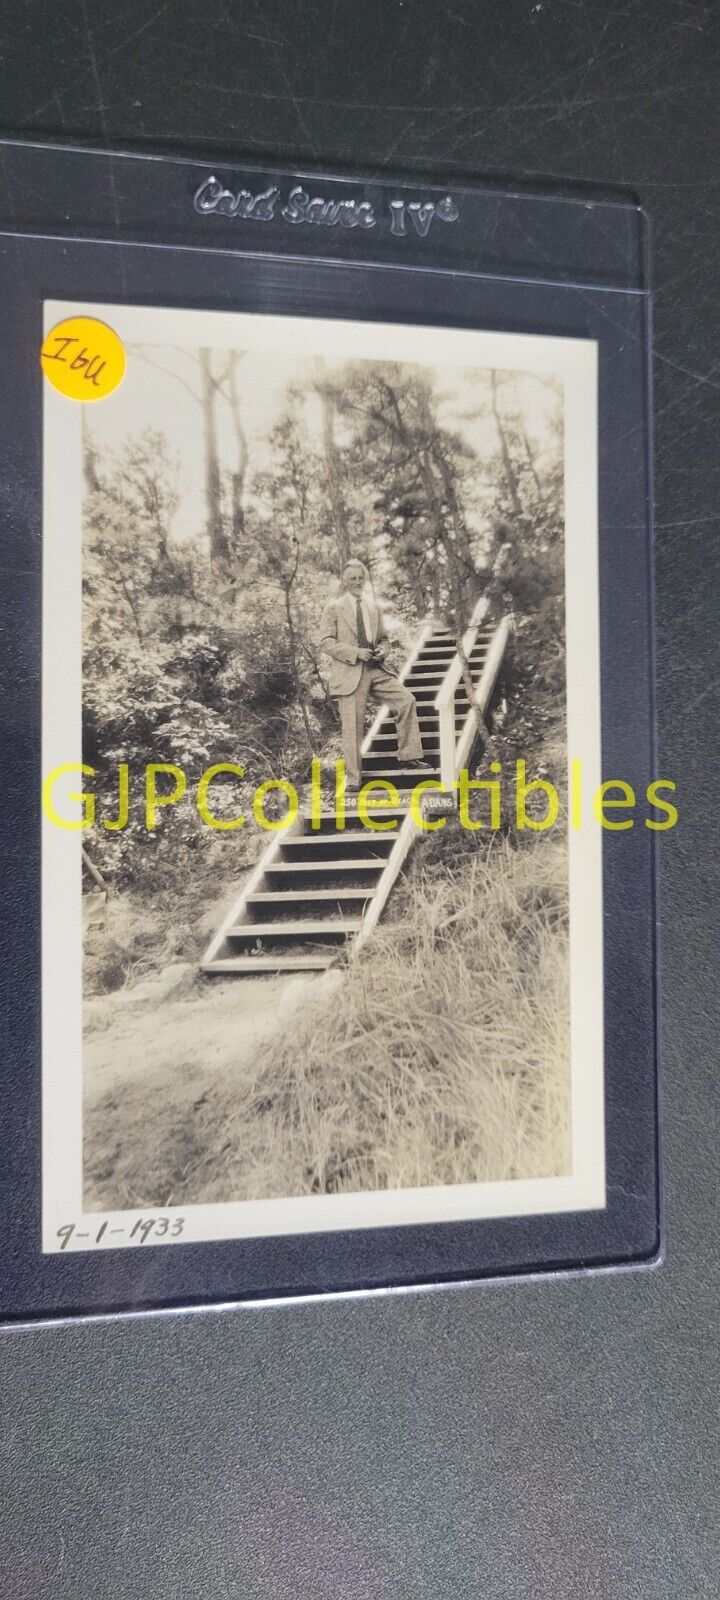 IGU VINTAGE PHOTOGRAPH Spencer Lionel Adams 9-1-1933 MAN ON WOOD STEPS